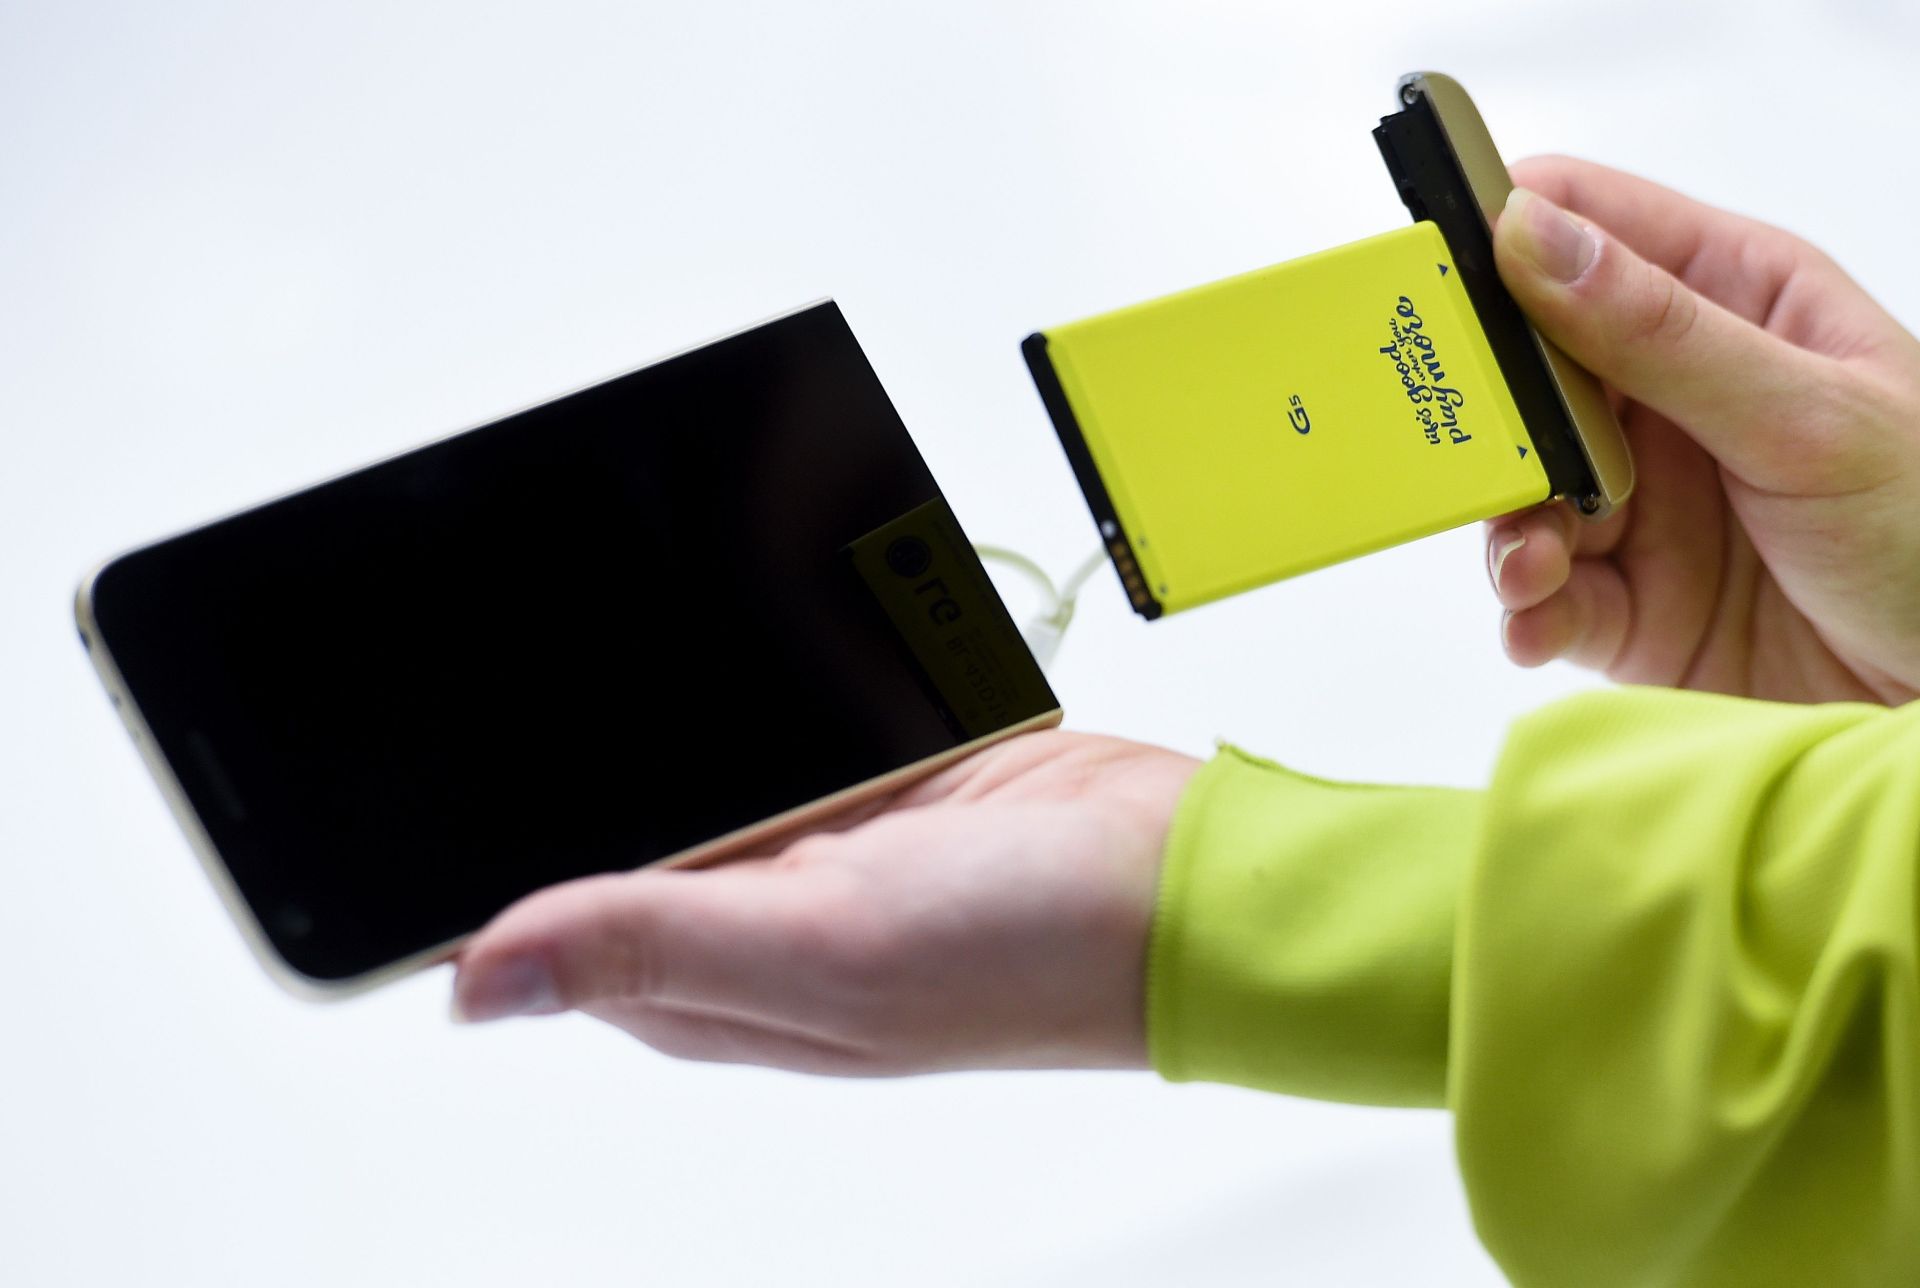 El LG G5 es uno de los pocos Smartphones de alta gama con batería removible o... ¿el único?